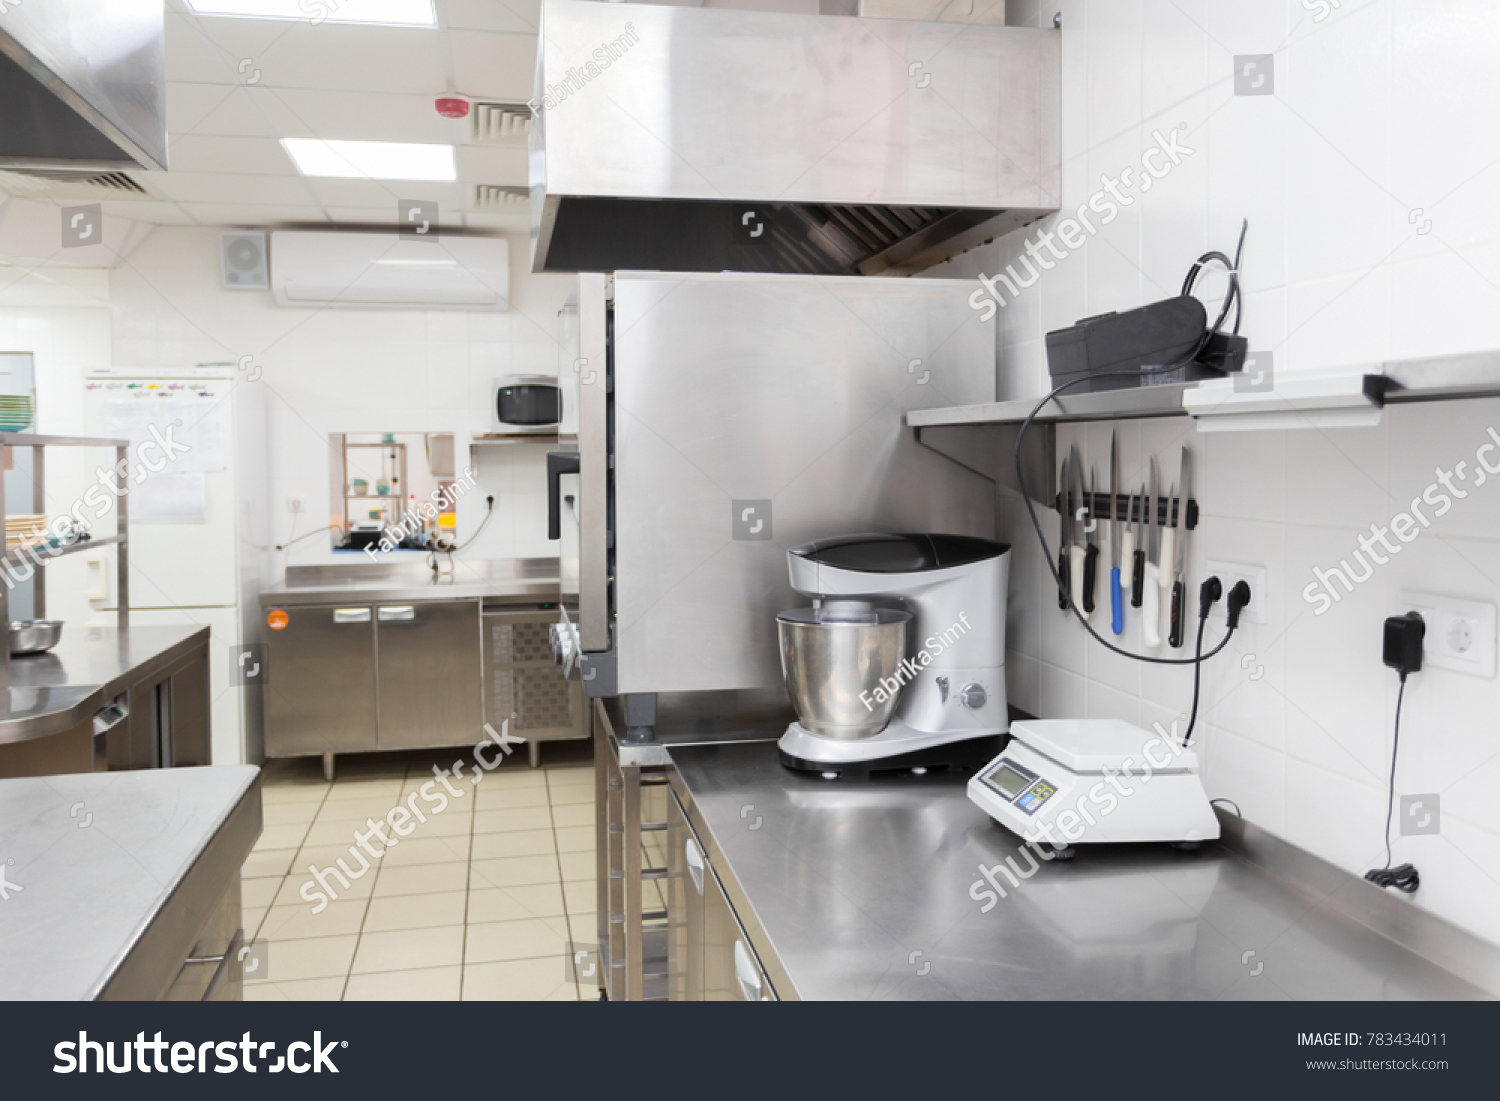 Stock Photo Modern Kitchen Equipment In A Restaurant 783434011 